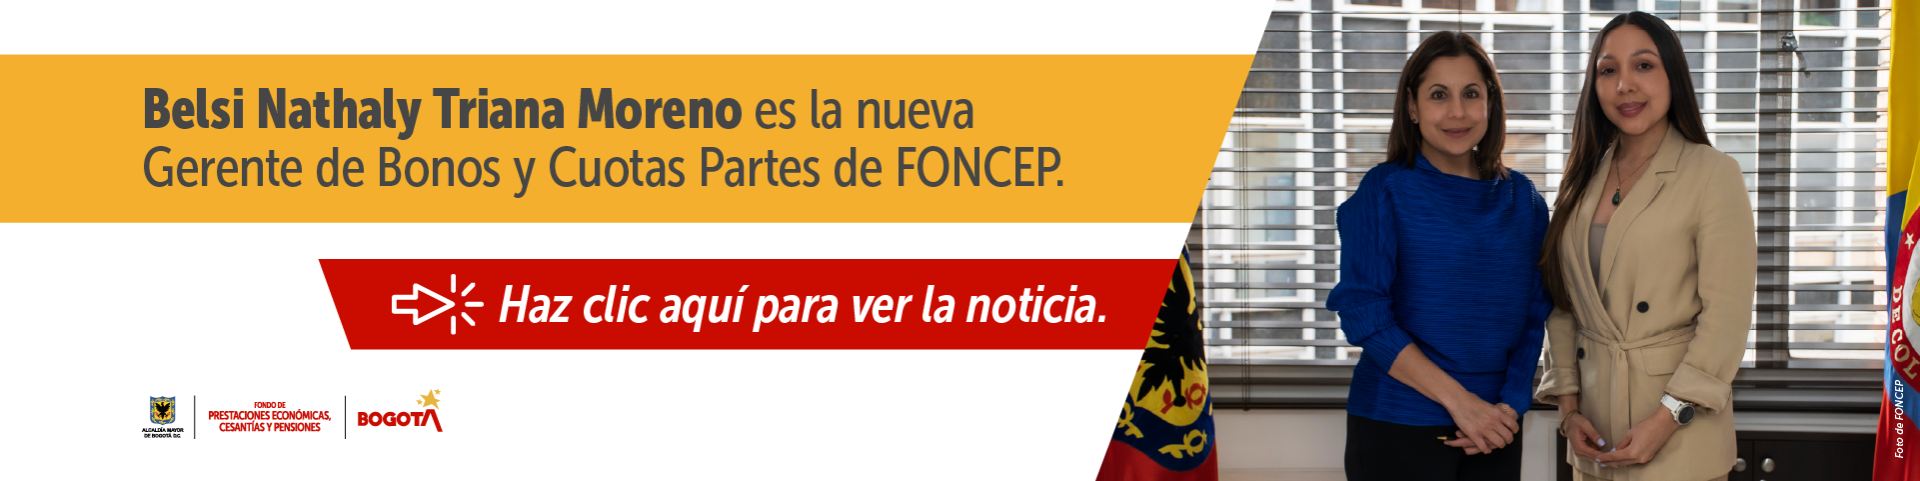 Belsi Nathaly Triana Moreno es la nueva Gerente de Bonos y Cuotas Partes de FONCEP. - Haz clic aquí para ver la noticia.